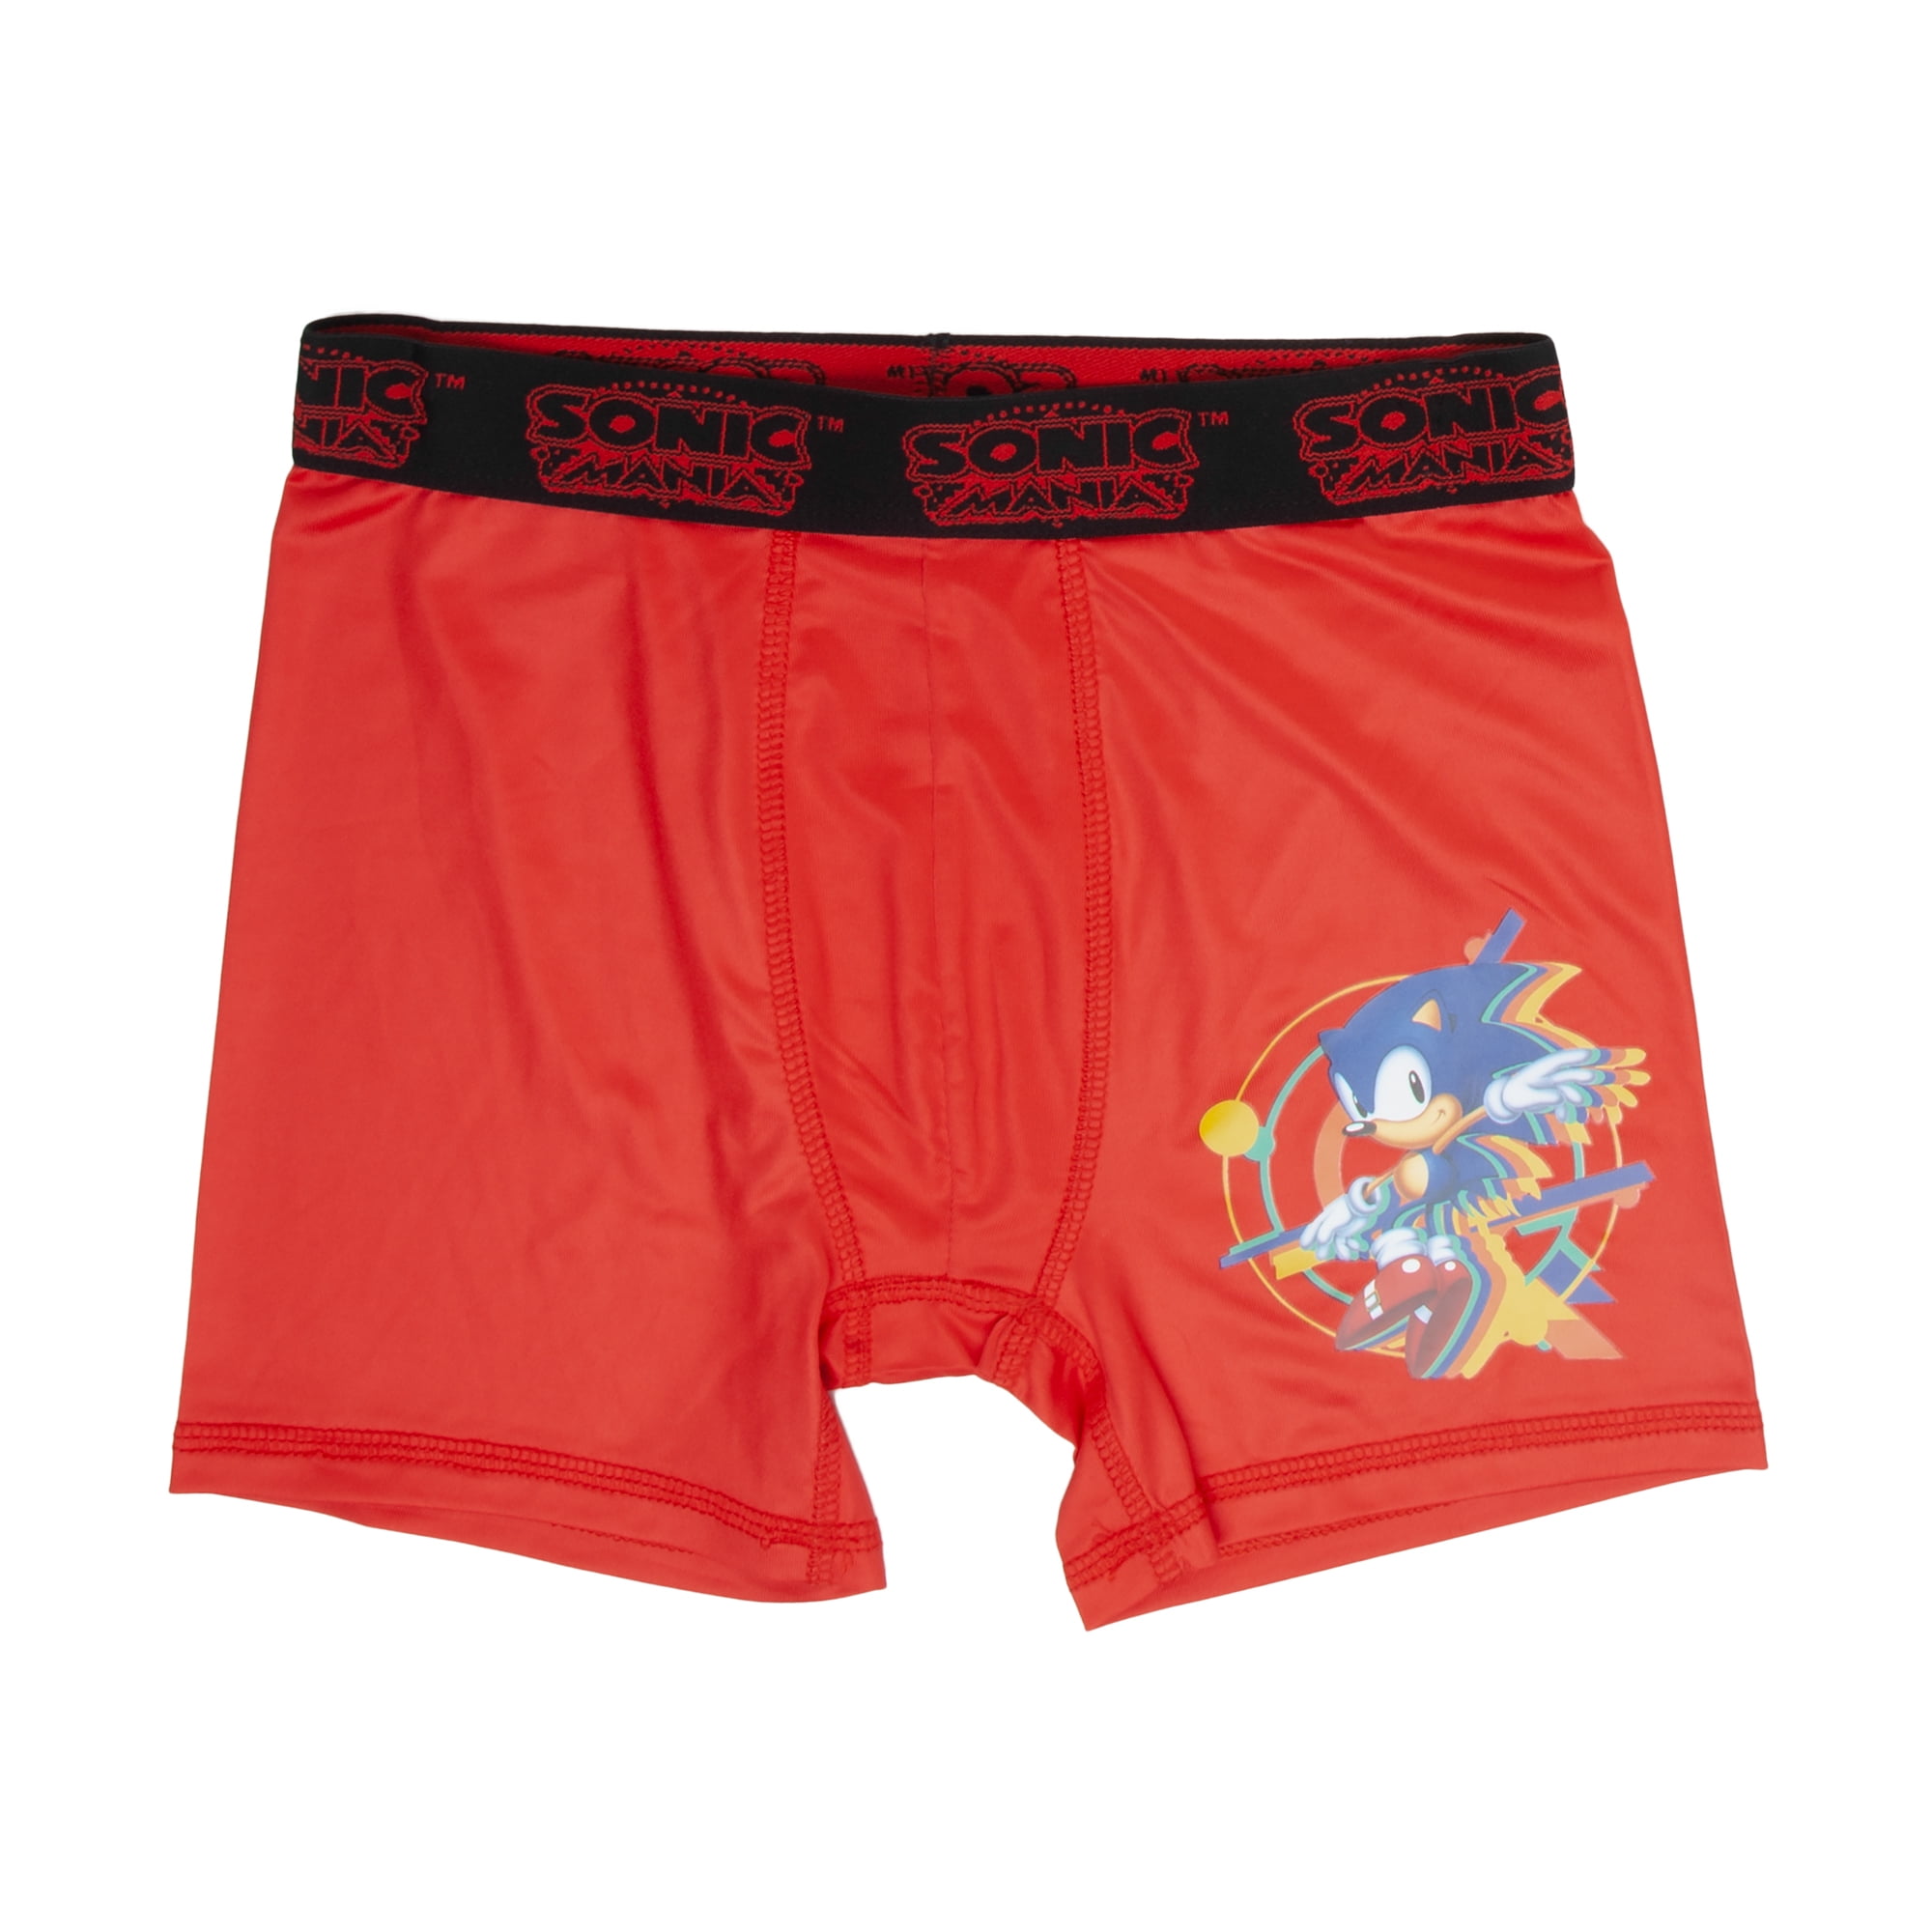 Sonic Hedgehog Boys Underwear, 3 Pack Boxer Brief (Little Boys & Big Boys)